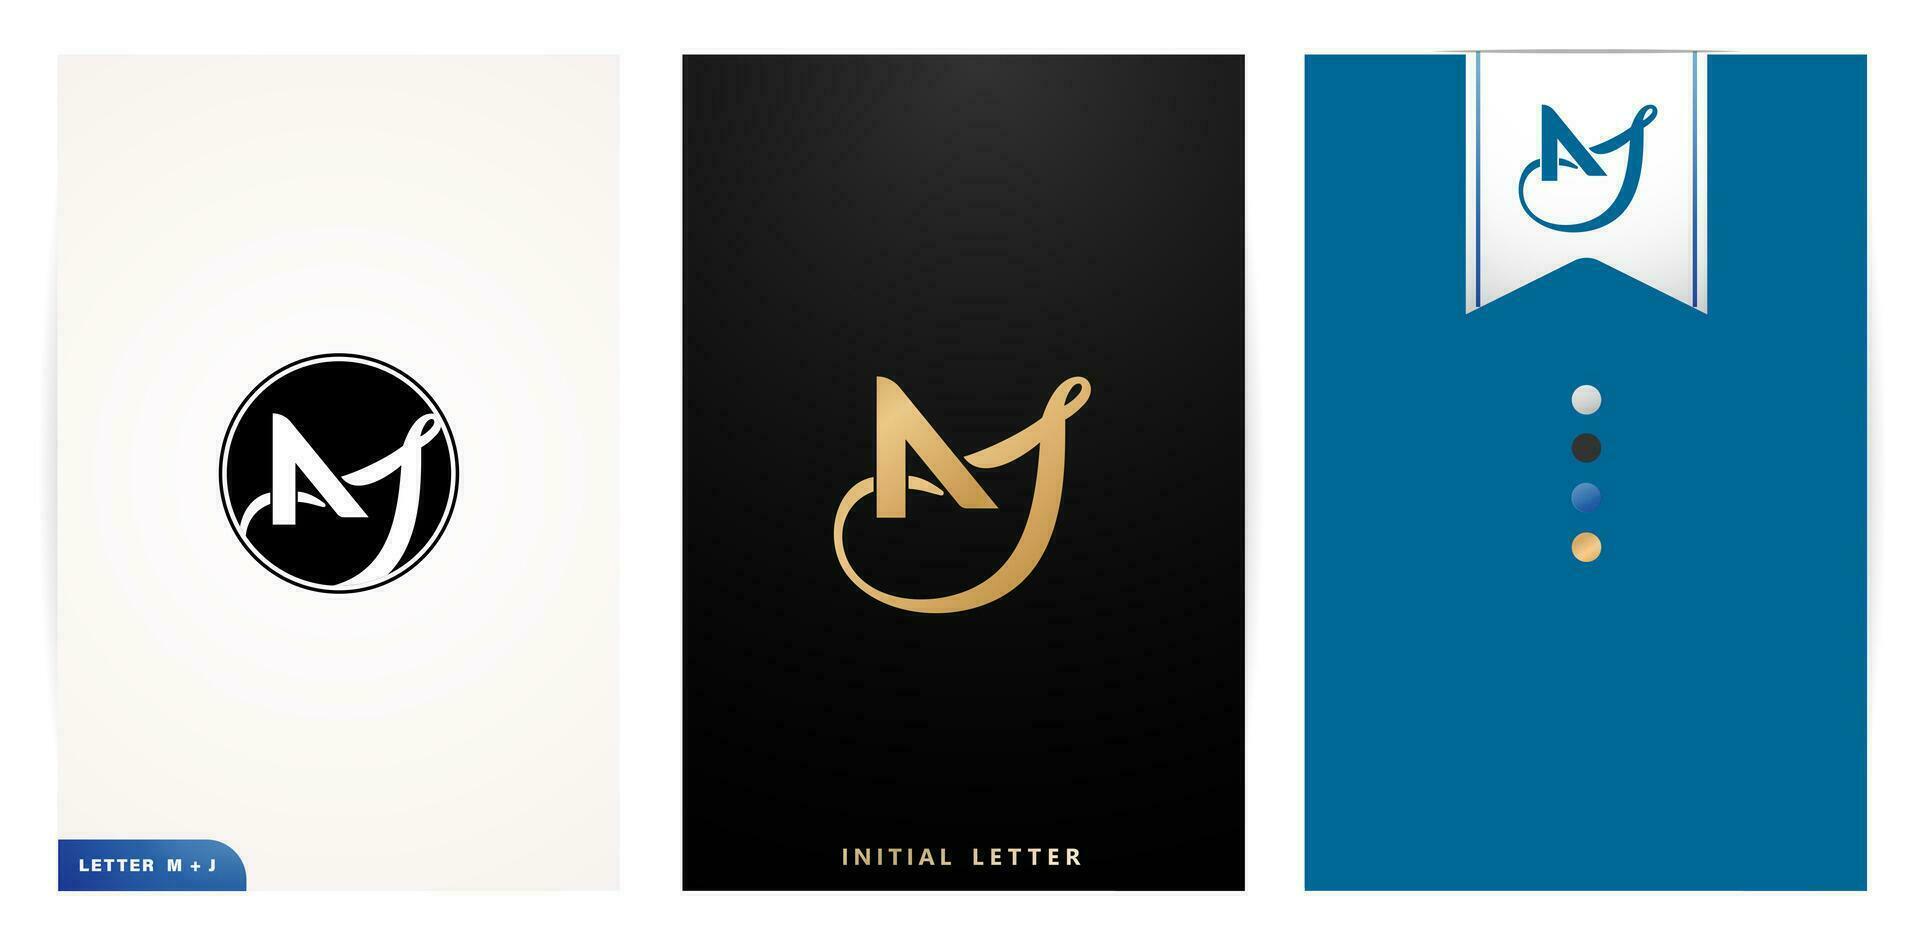 mj första brev monogram logotyp isolerat vit bakgrunder för företag kort element, branding företag identitet, annons material gyllene folie, collage grafik, annonser kampanjer, bröllop inviterar vektor